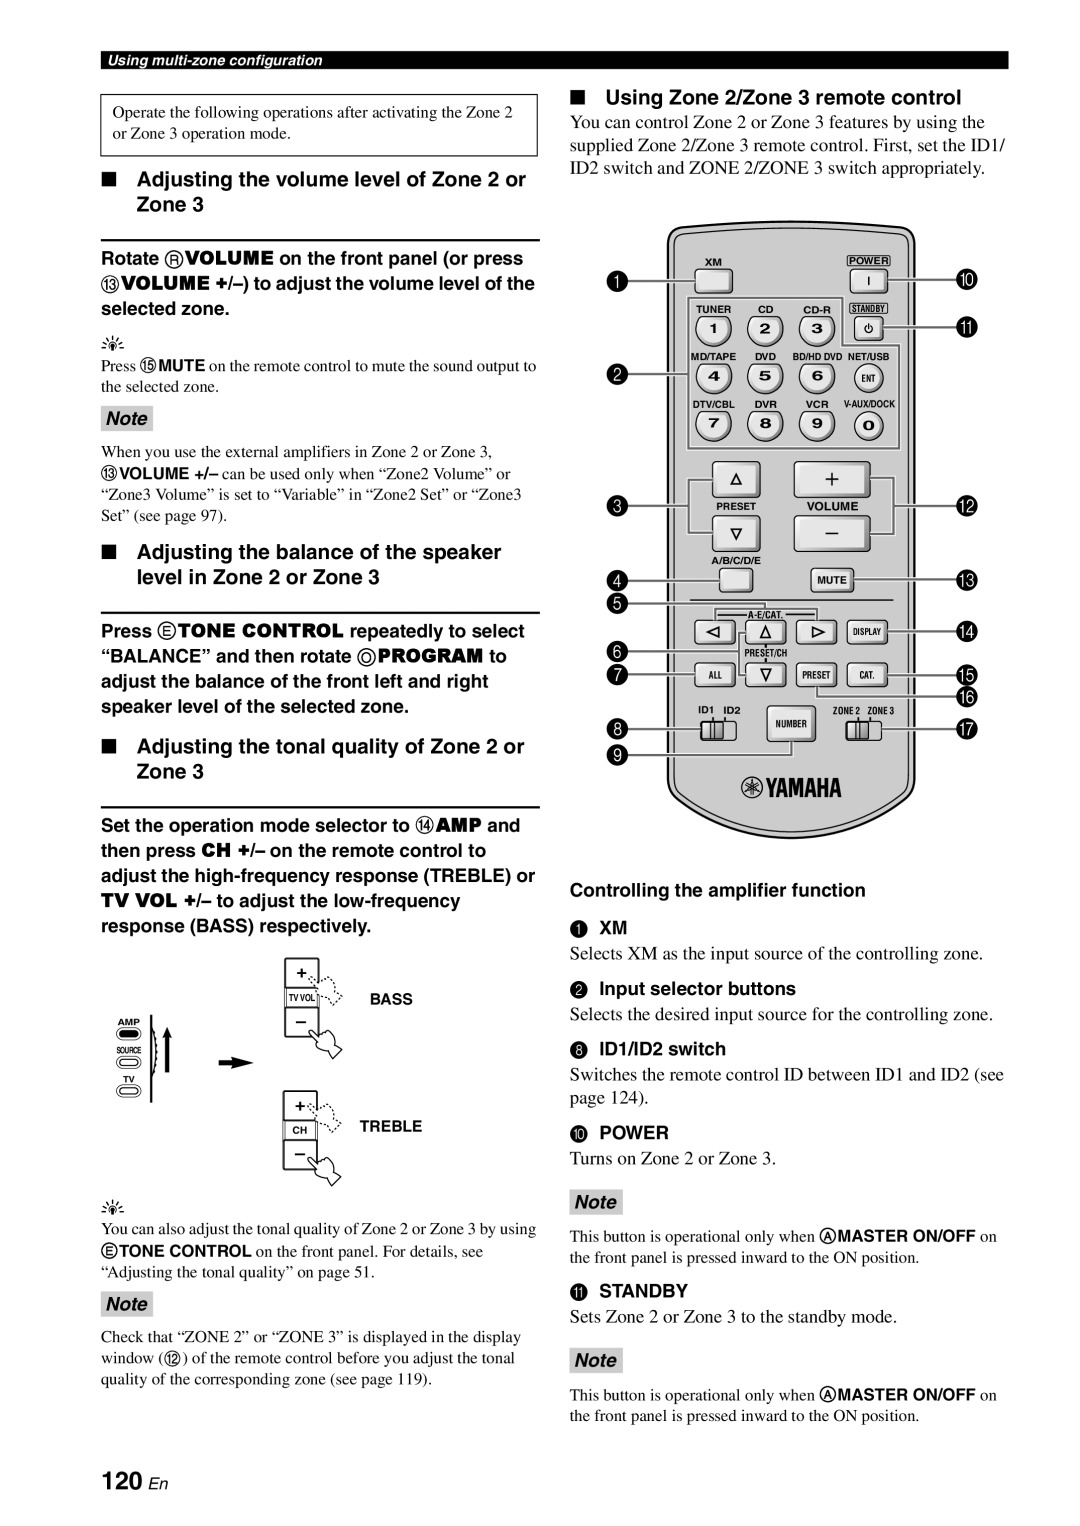 Yamaha RX-V3800 120 En, Adjusting the volume level of Zone 2 or Zone, Adjusting the tonal quality of Zone 2 or Zone, Power 